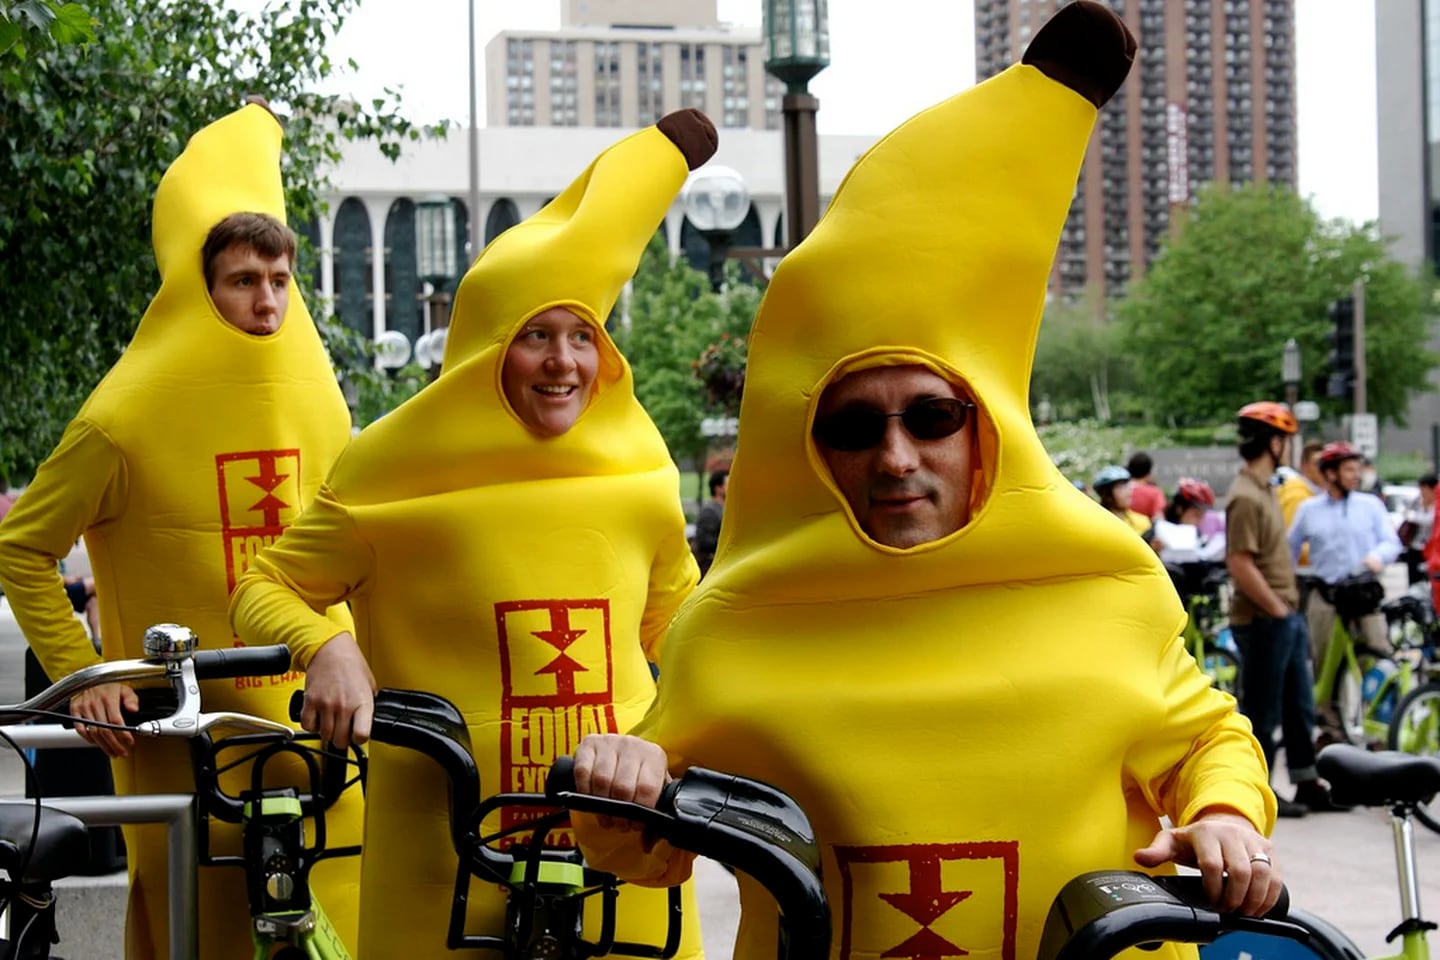 Disfraces grupo plátanos, Tienda de Disfraces Online